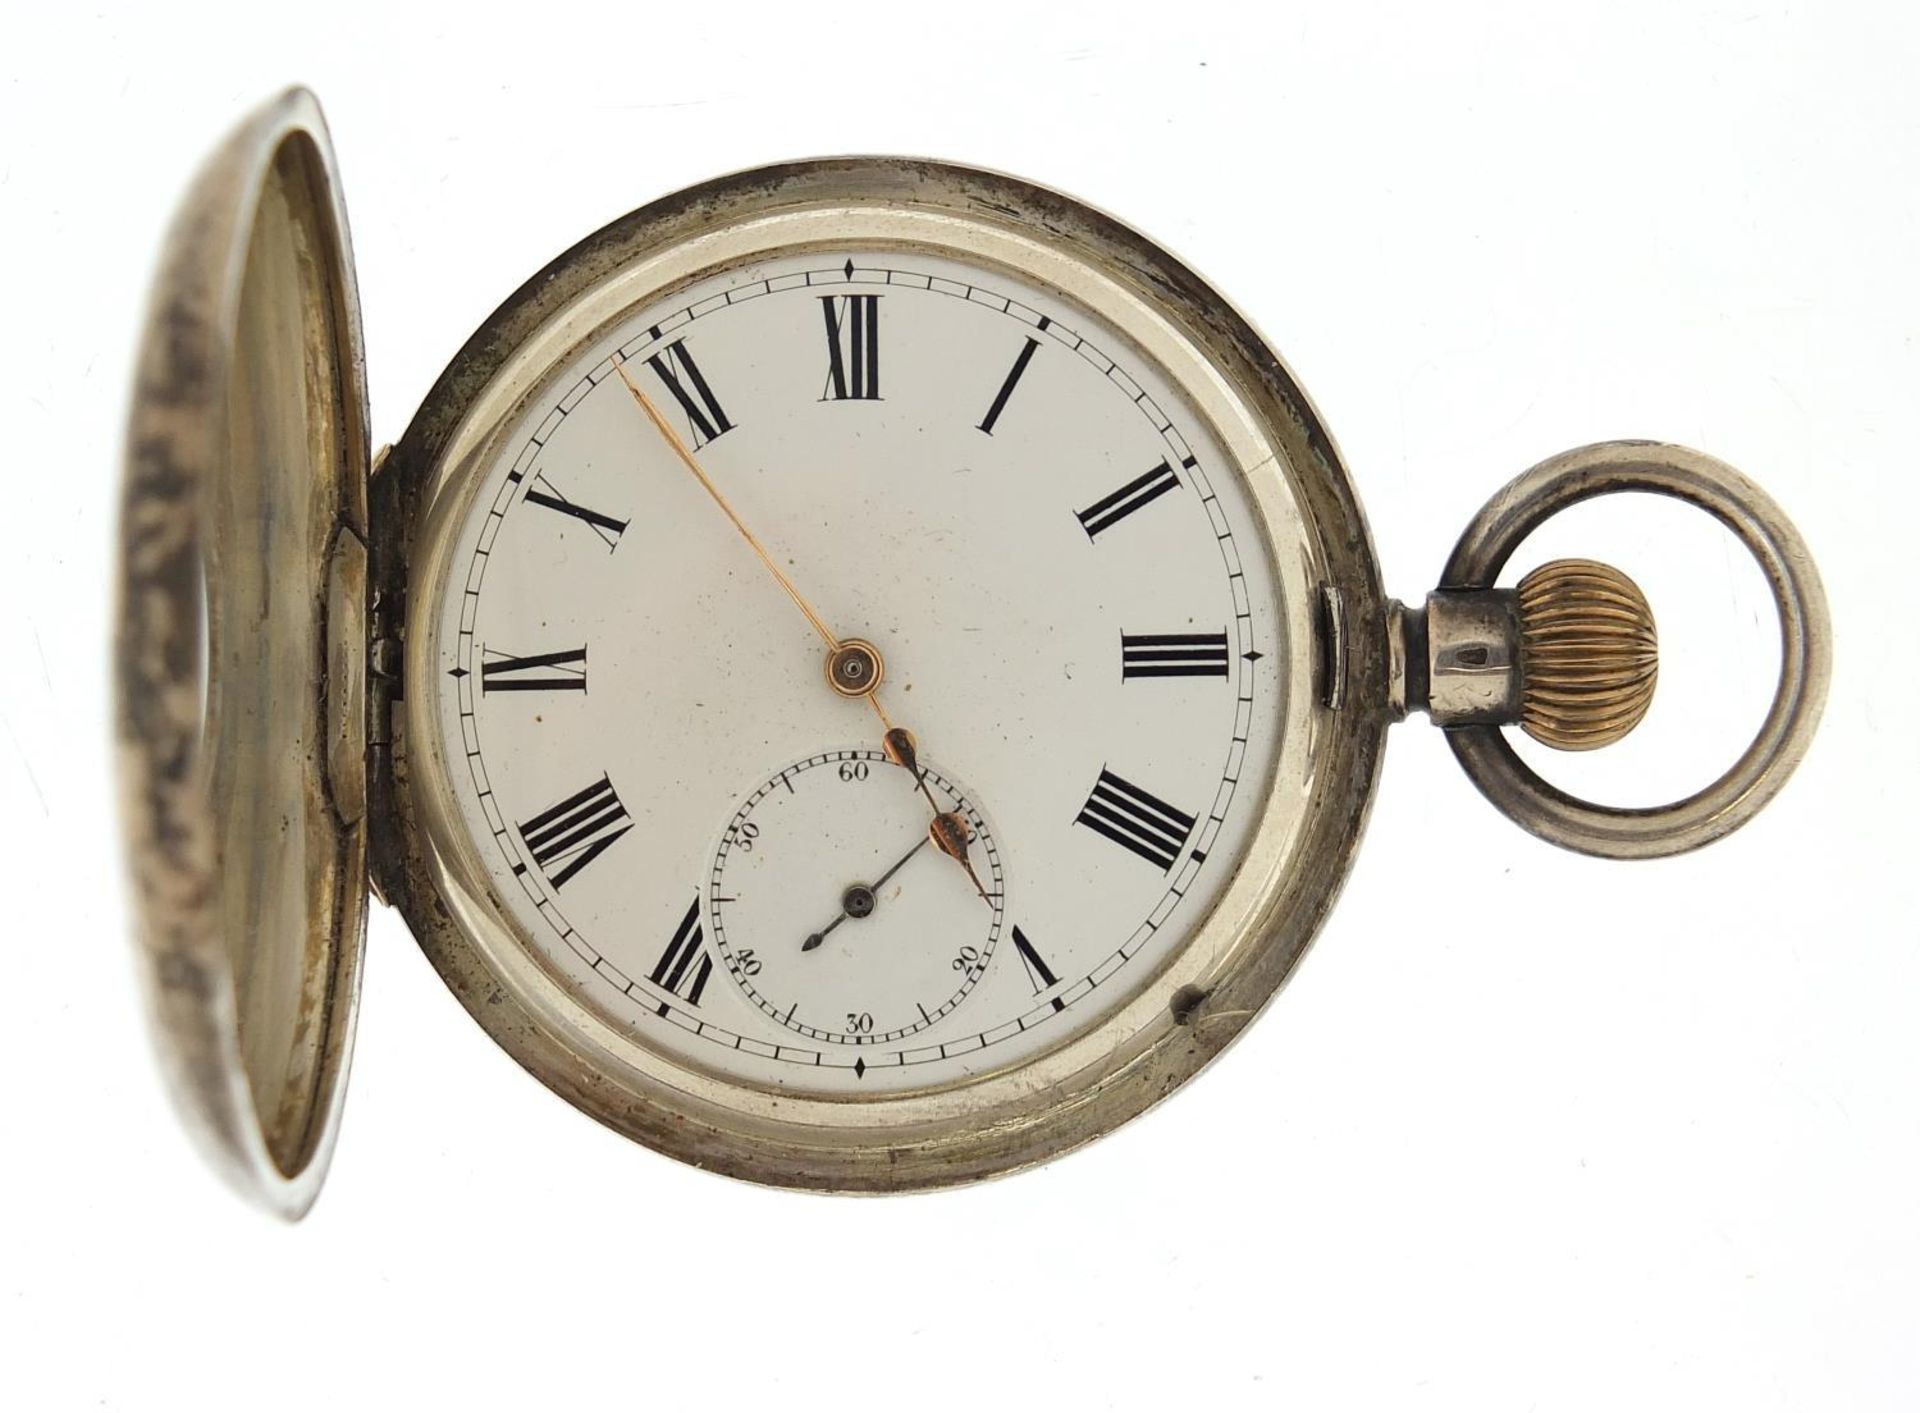 Gentlemen's silver half hunter pocket watch with enamel dial, 49mm in diameter - Image 2 of 5